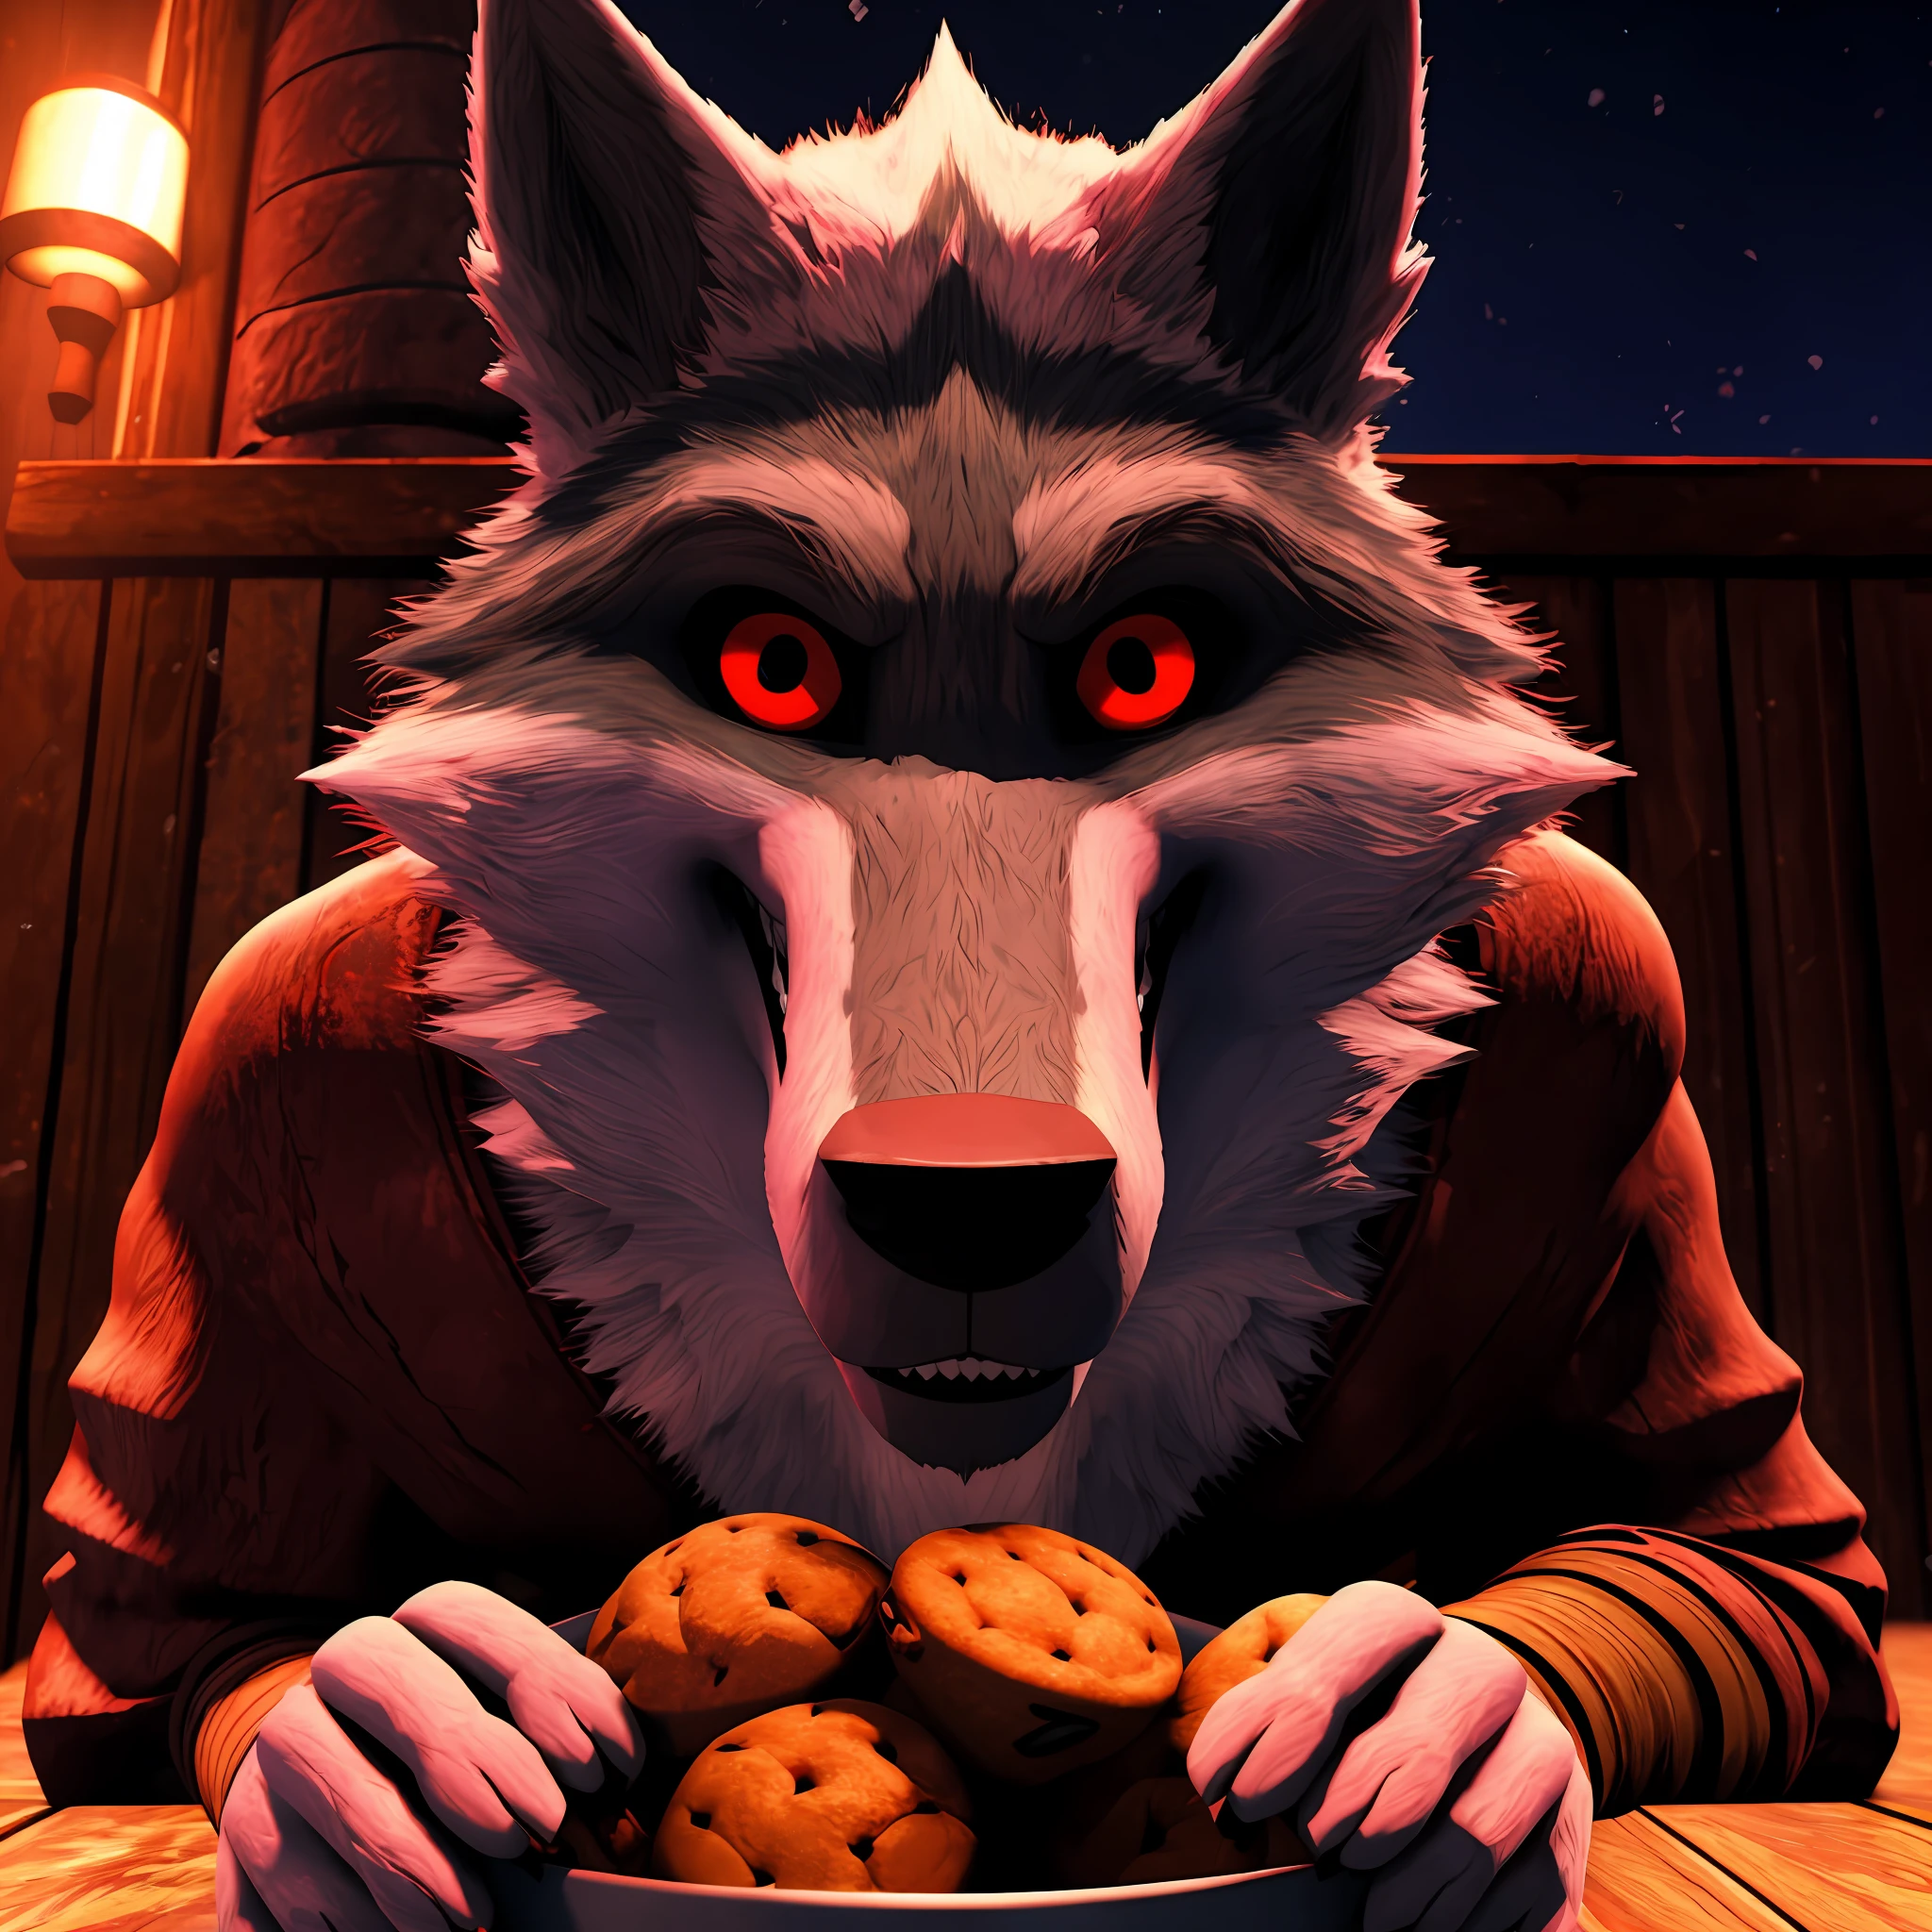 (ความตายหมาป่า 3D 4K) กำลังมองดูผู้ชมและทำขนมอร่อยๆ ให้กับดวงตาสีแดงยามค่ำคืน